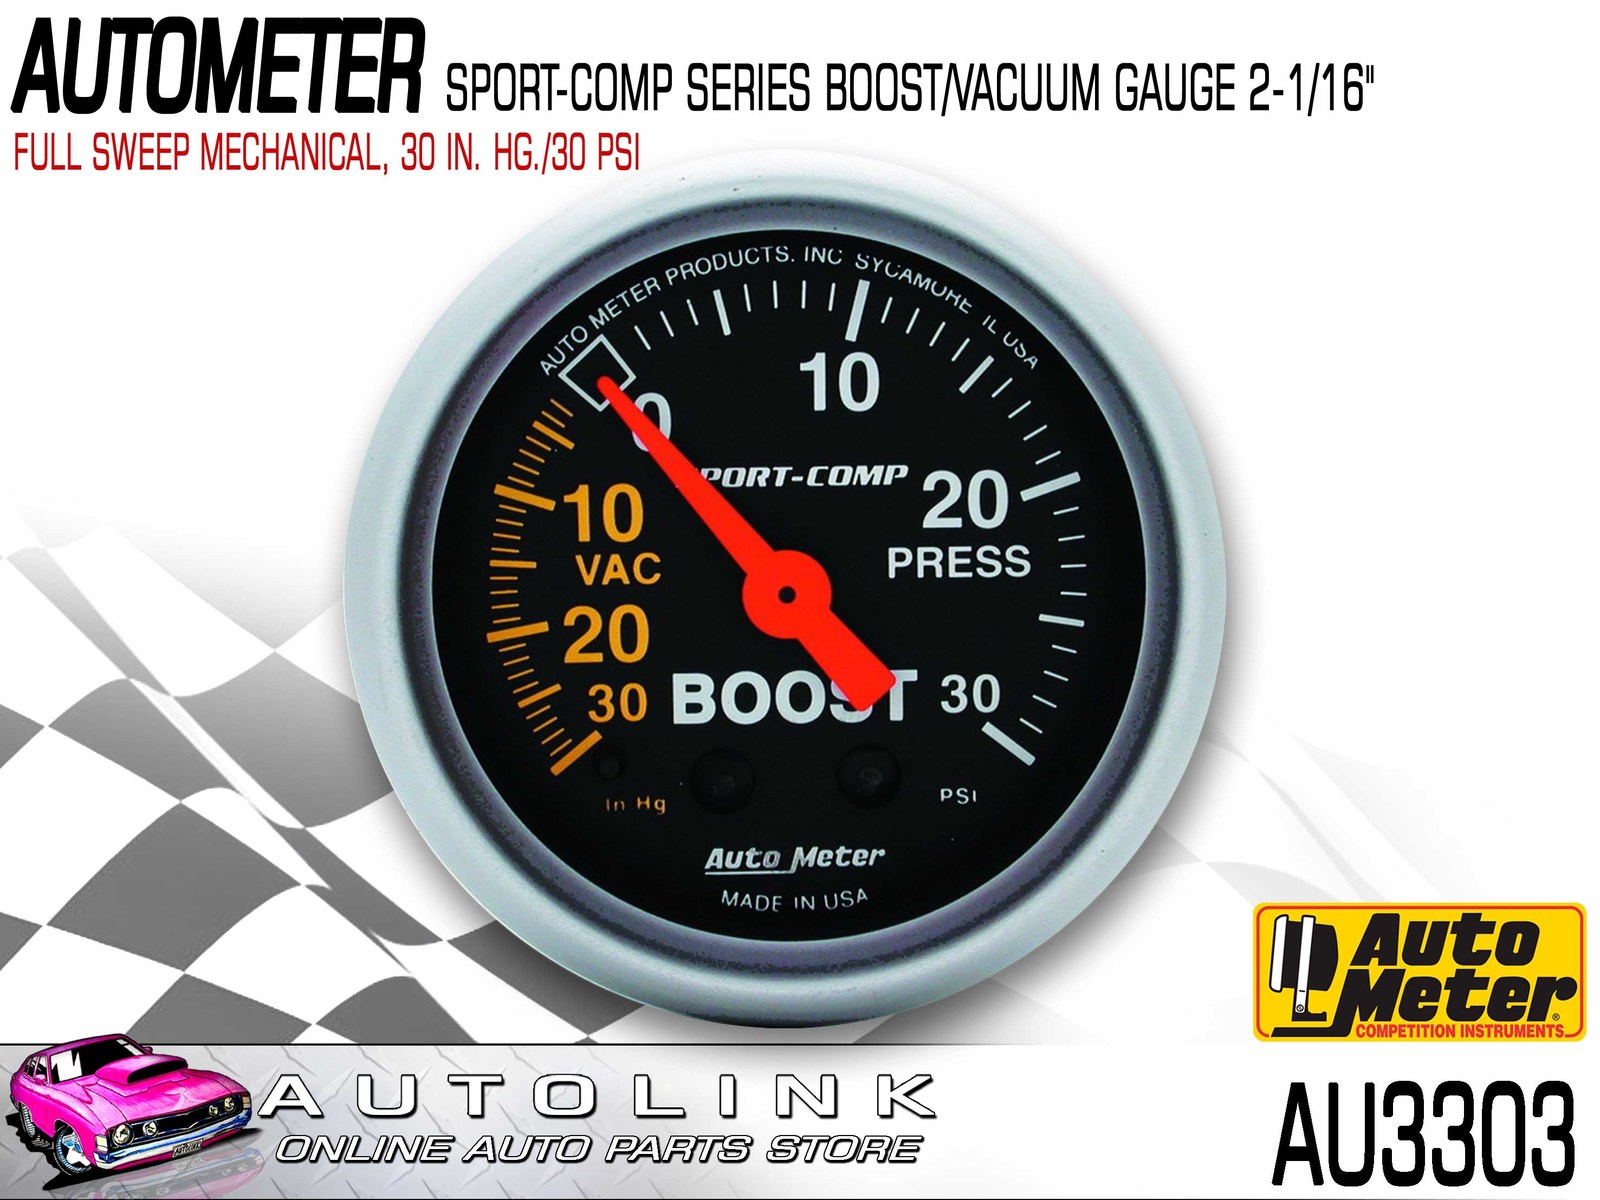 Auto Meter 3401 Sport-Comp Mechanical Boost/Vacuum Gauge 